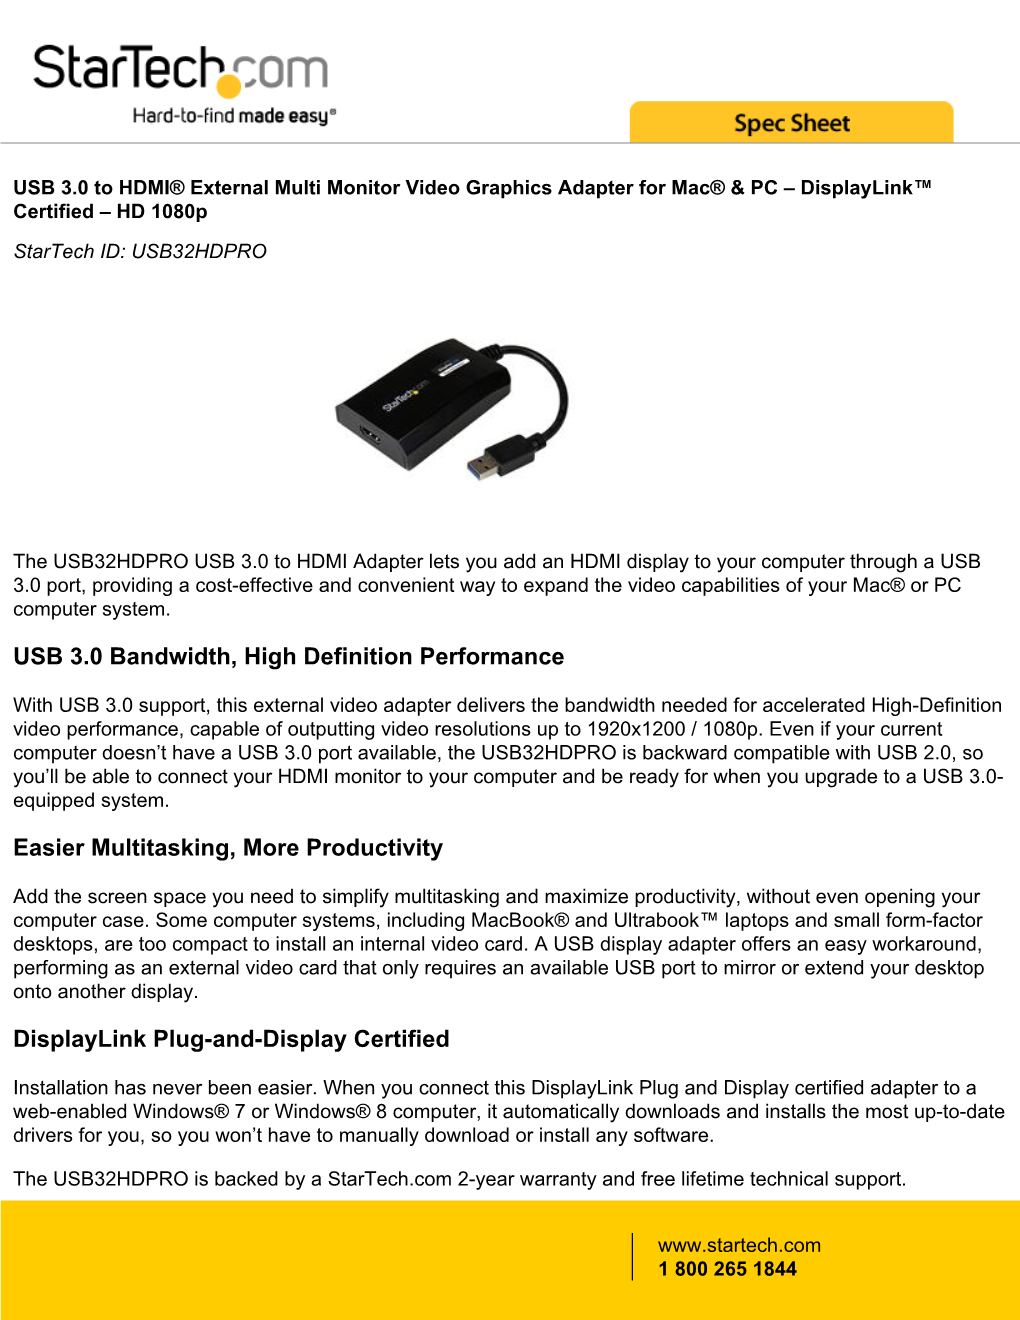 USB 3.0 Bandwidth, High Definition Performance Easier Multitasking